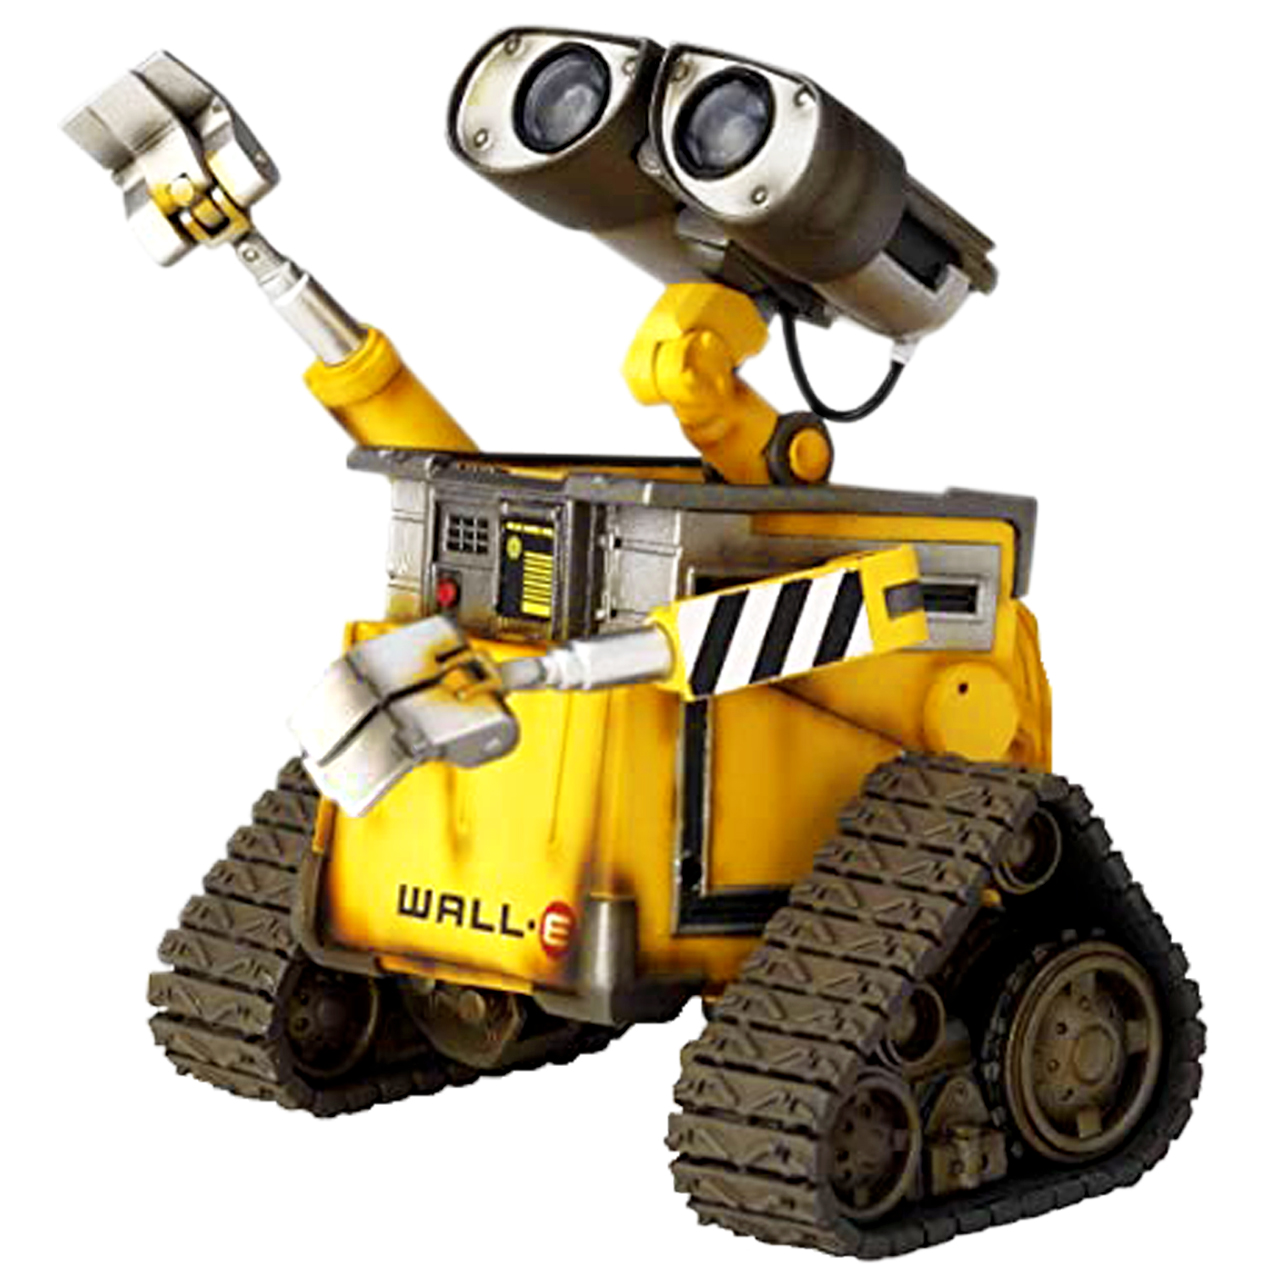 نقد و بررسی اکشن فیگور دیزنی طرح WALL.E کد 377150 توسط خریداران